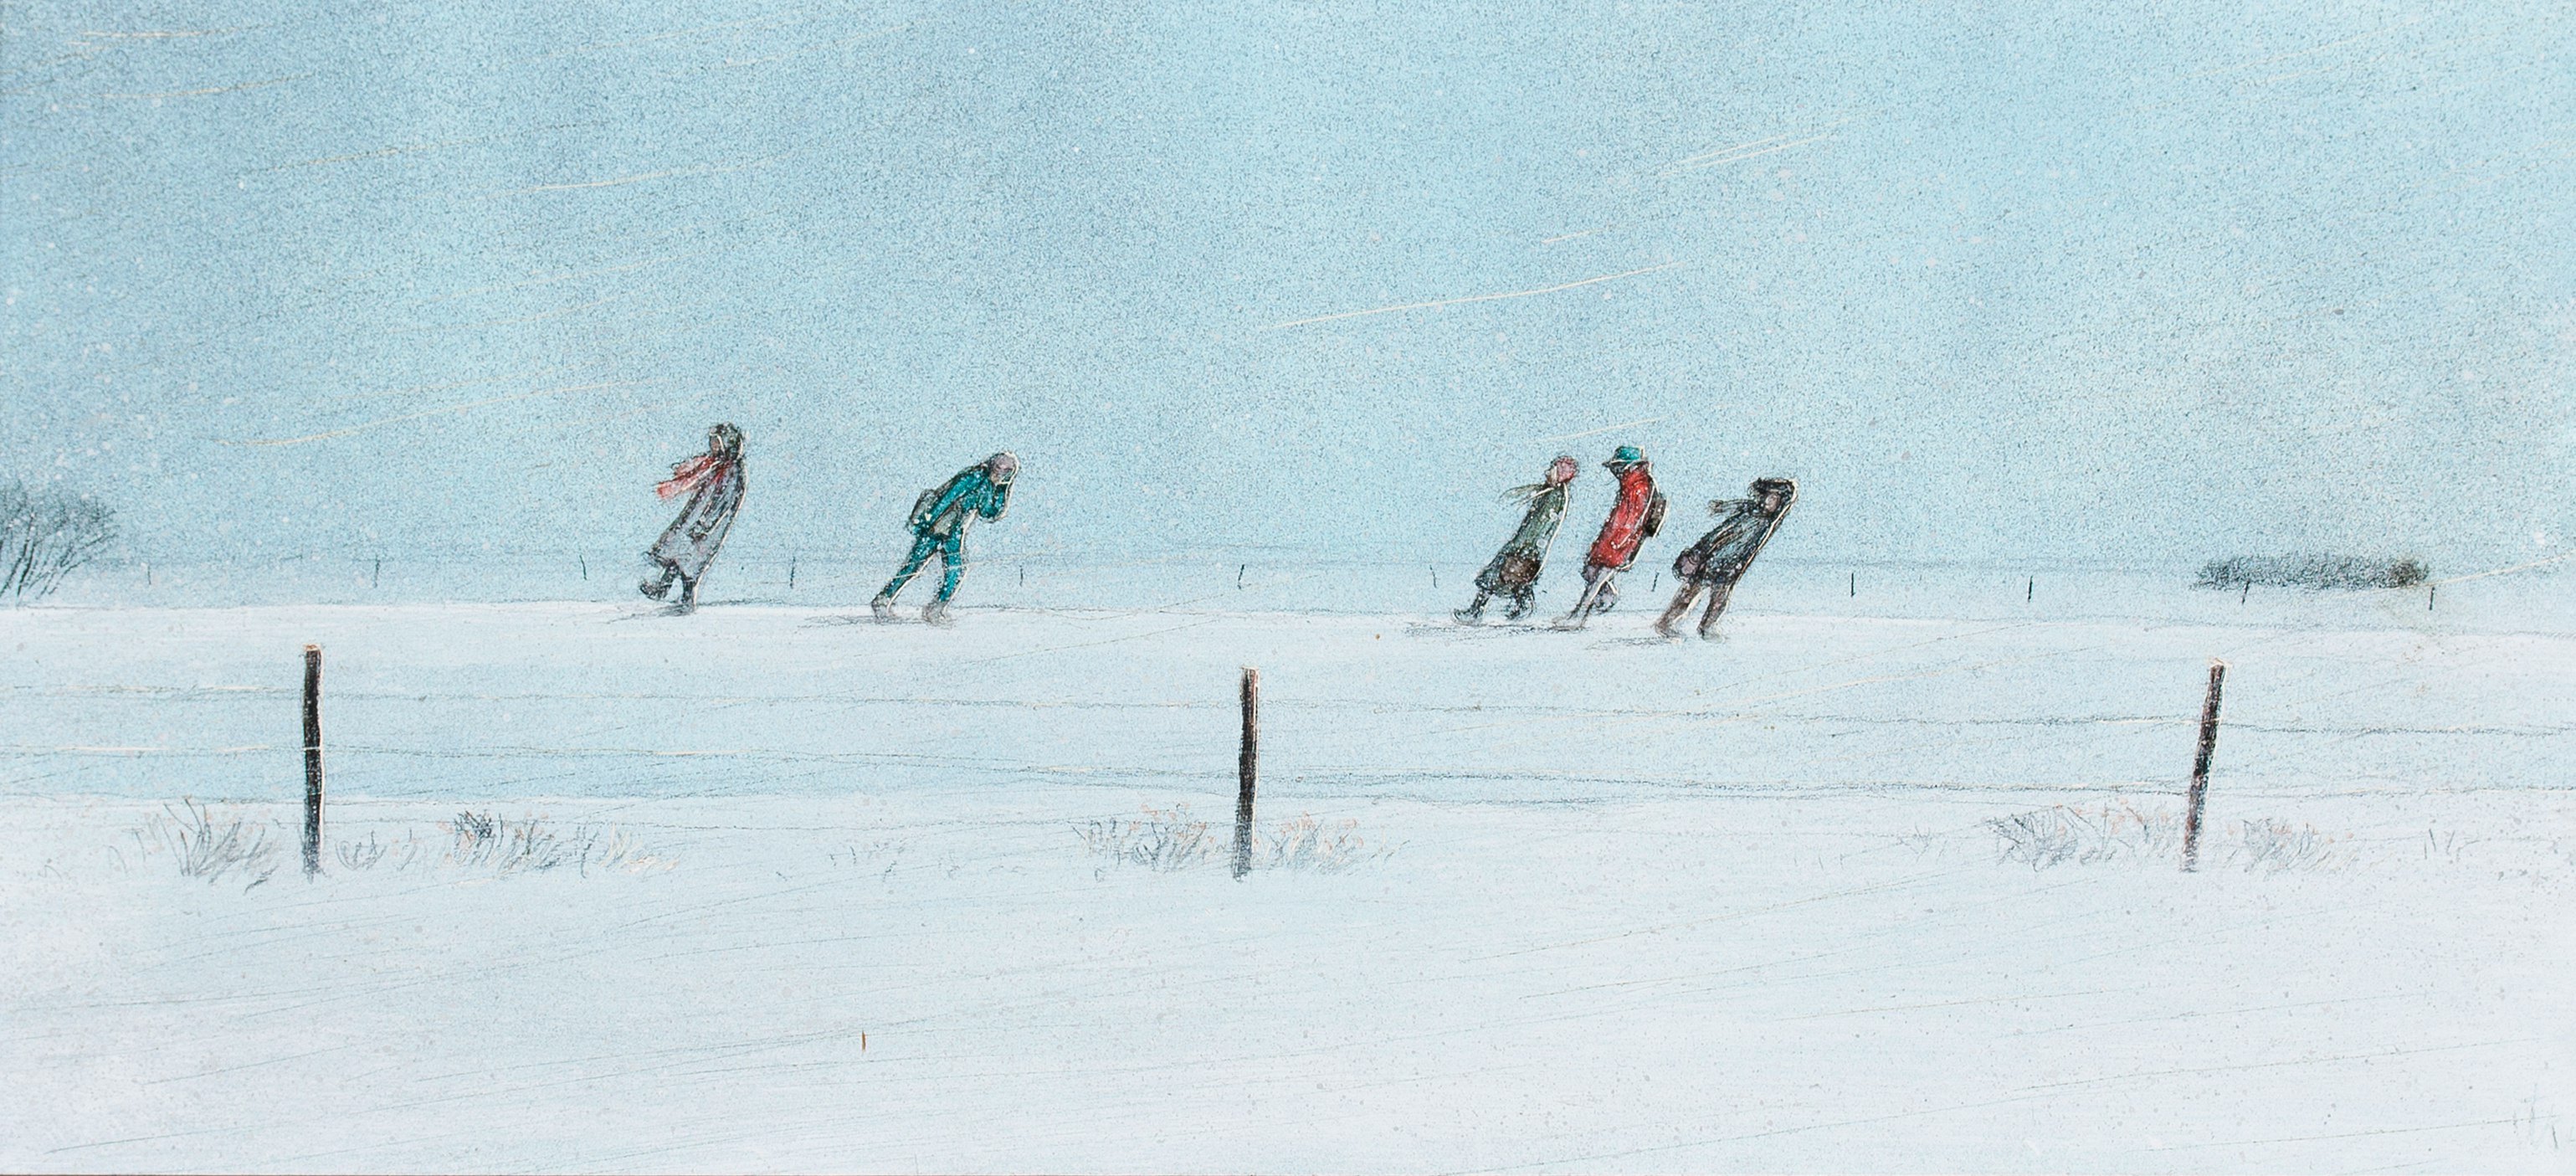 Prairie School Children’s Walk Home in Blizzard